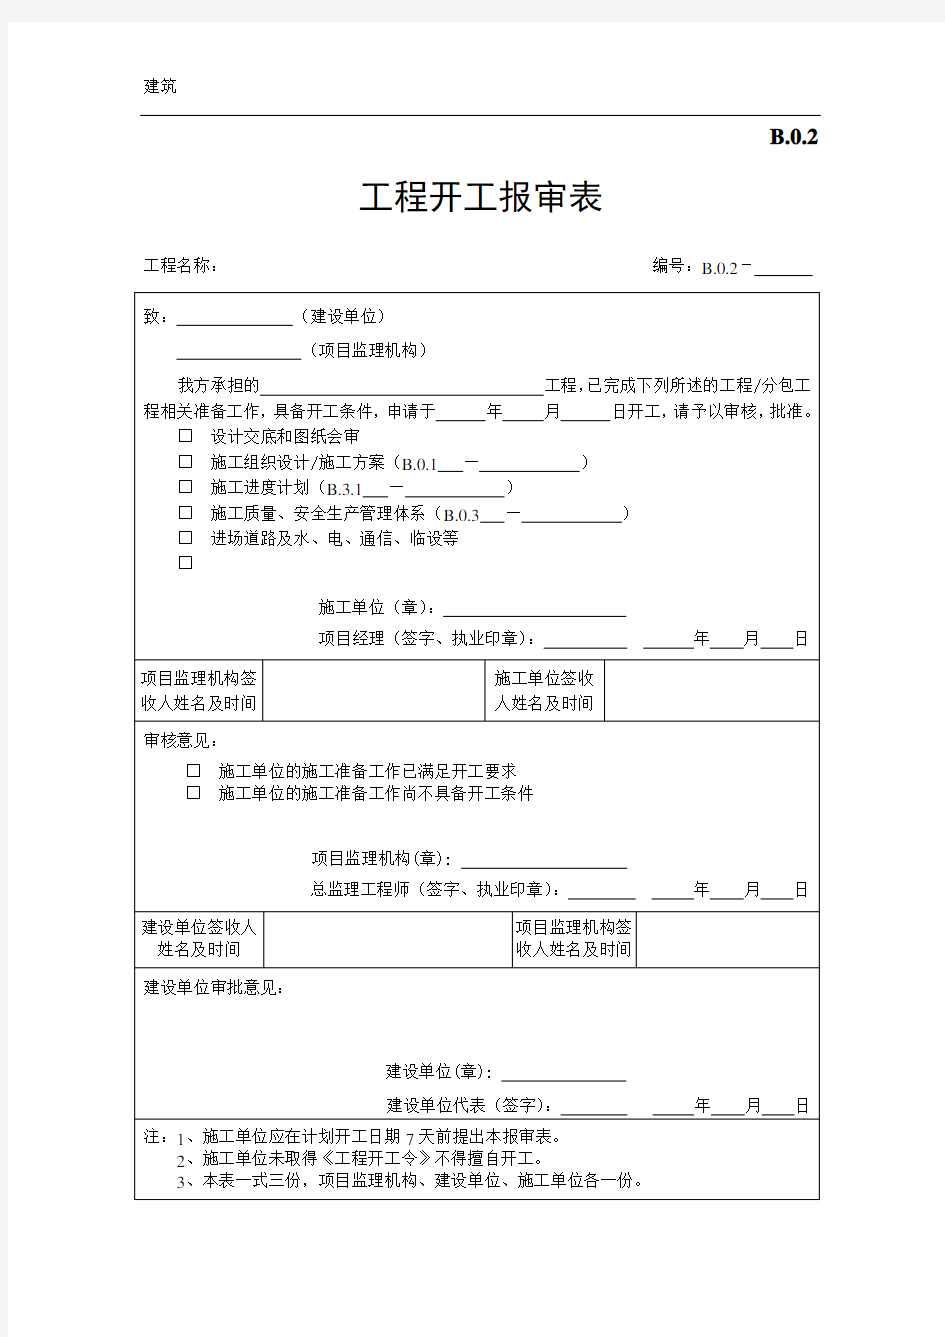 江苏第五版建设工程资料表格